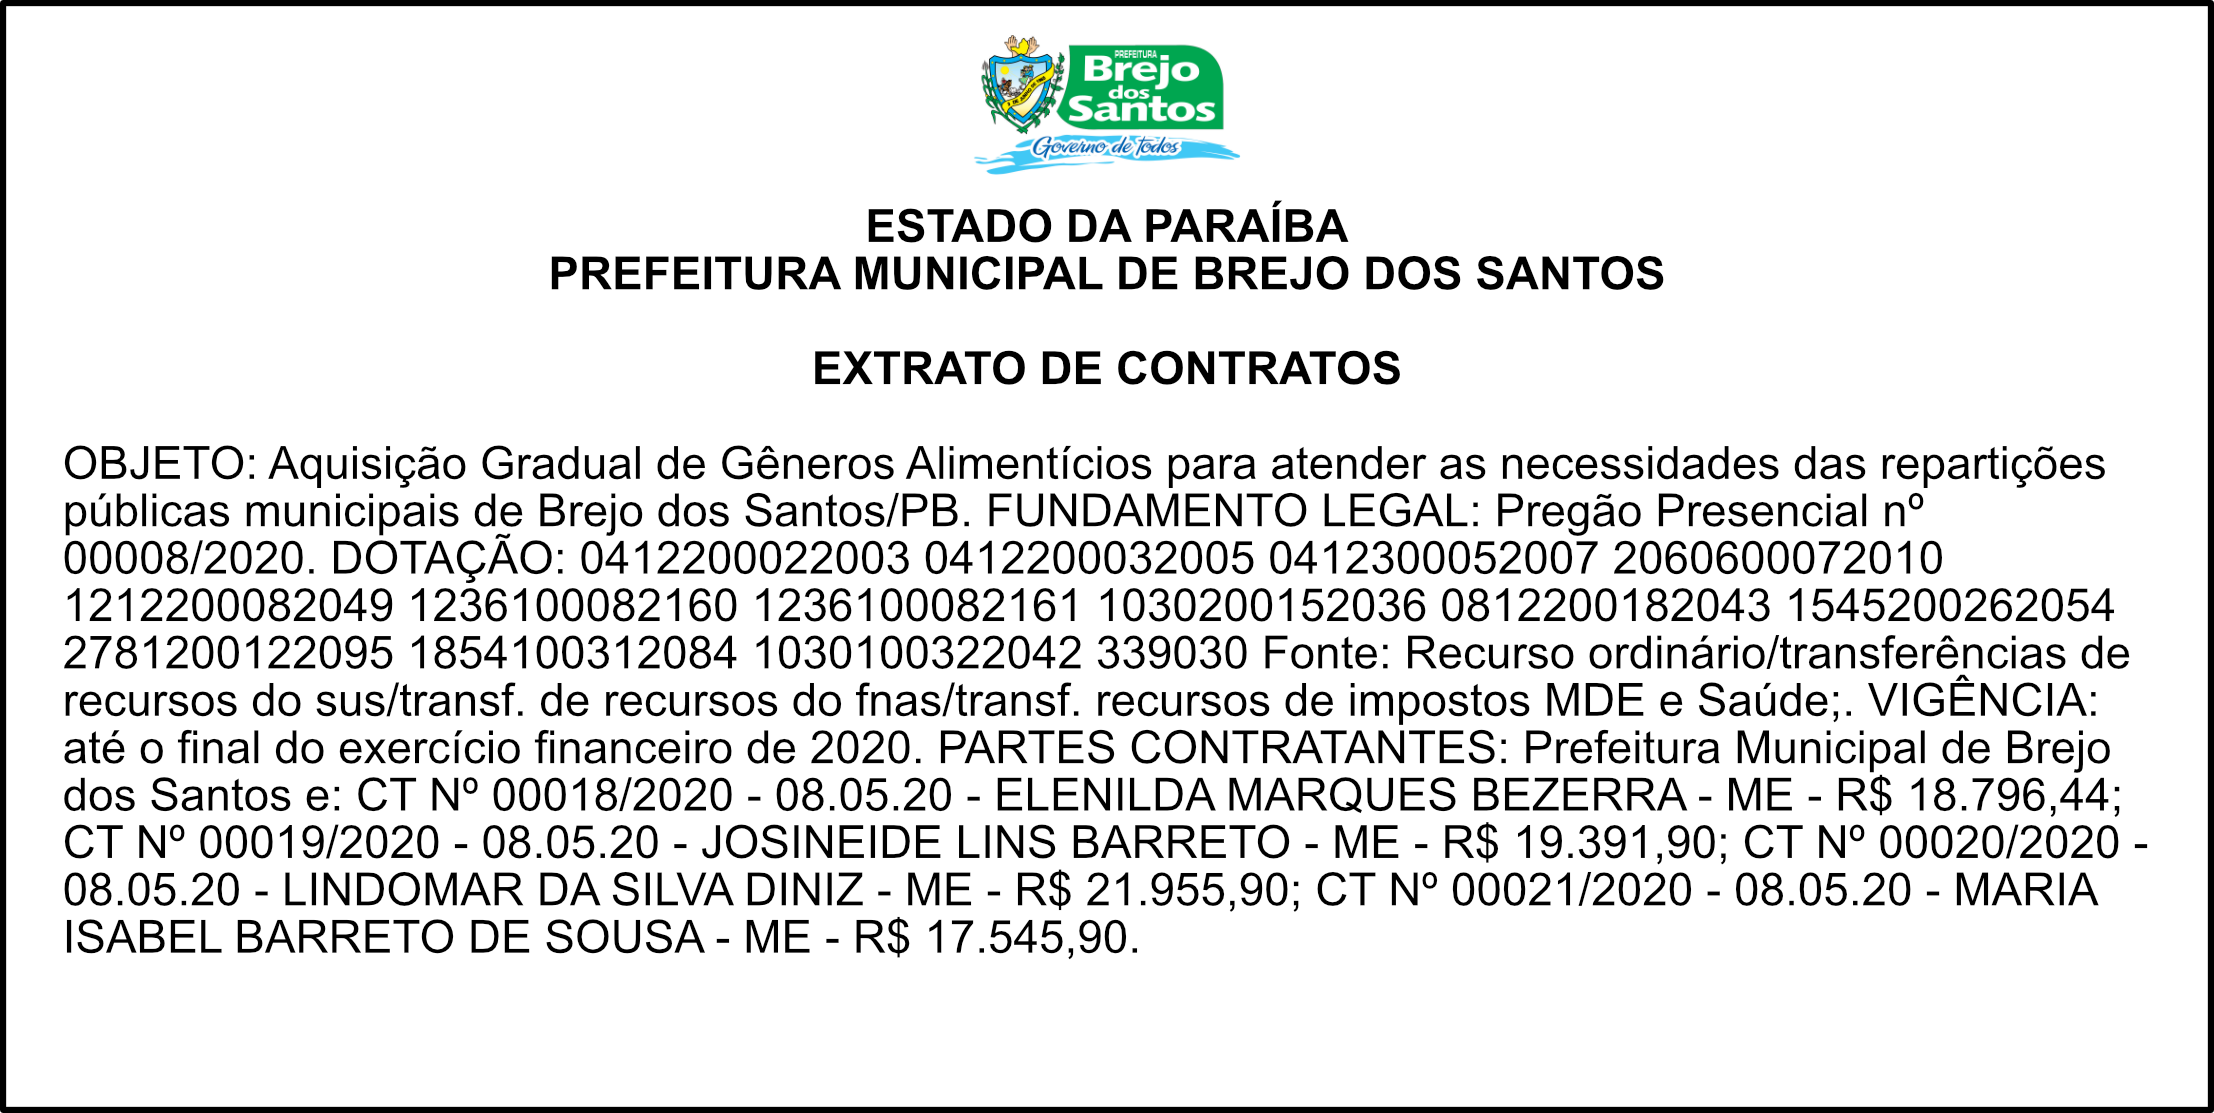 PREFEITURA MUNICIPAL DE BREJO DOS SANTOS – EXTRATO DE CONTRATOS – PREGÃO PRESENCIAL Nº 00008/2020